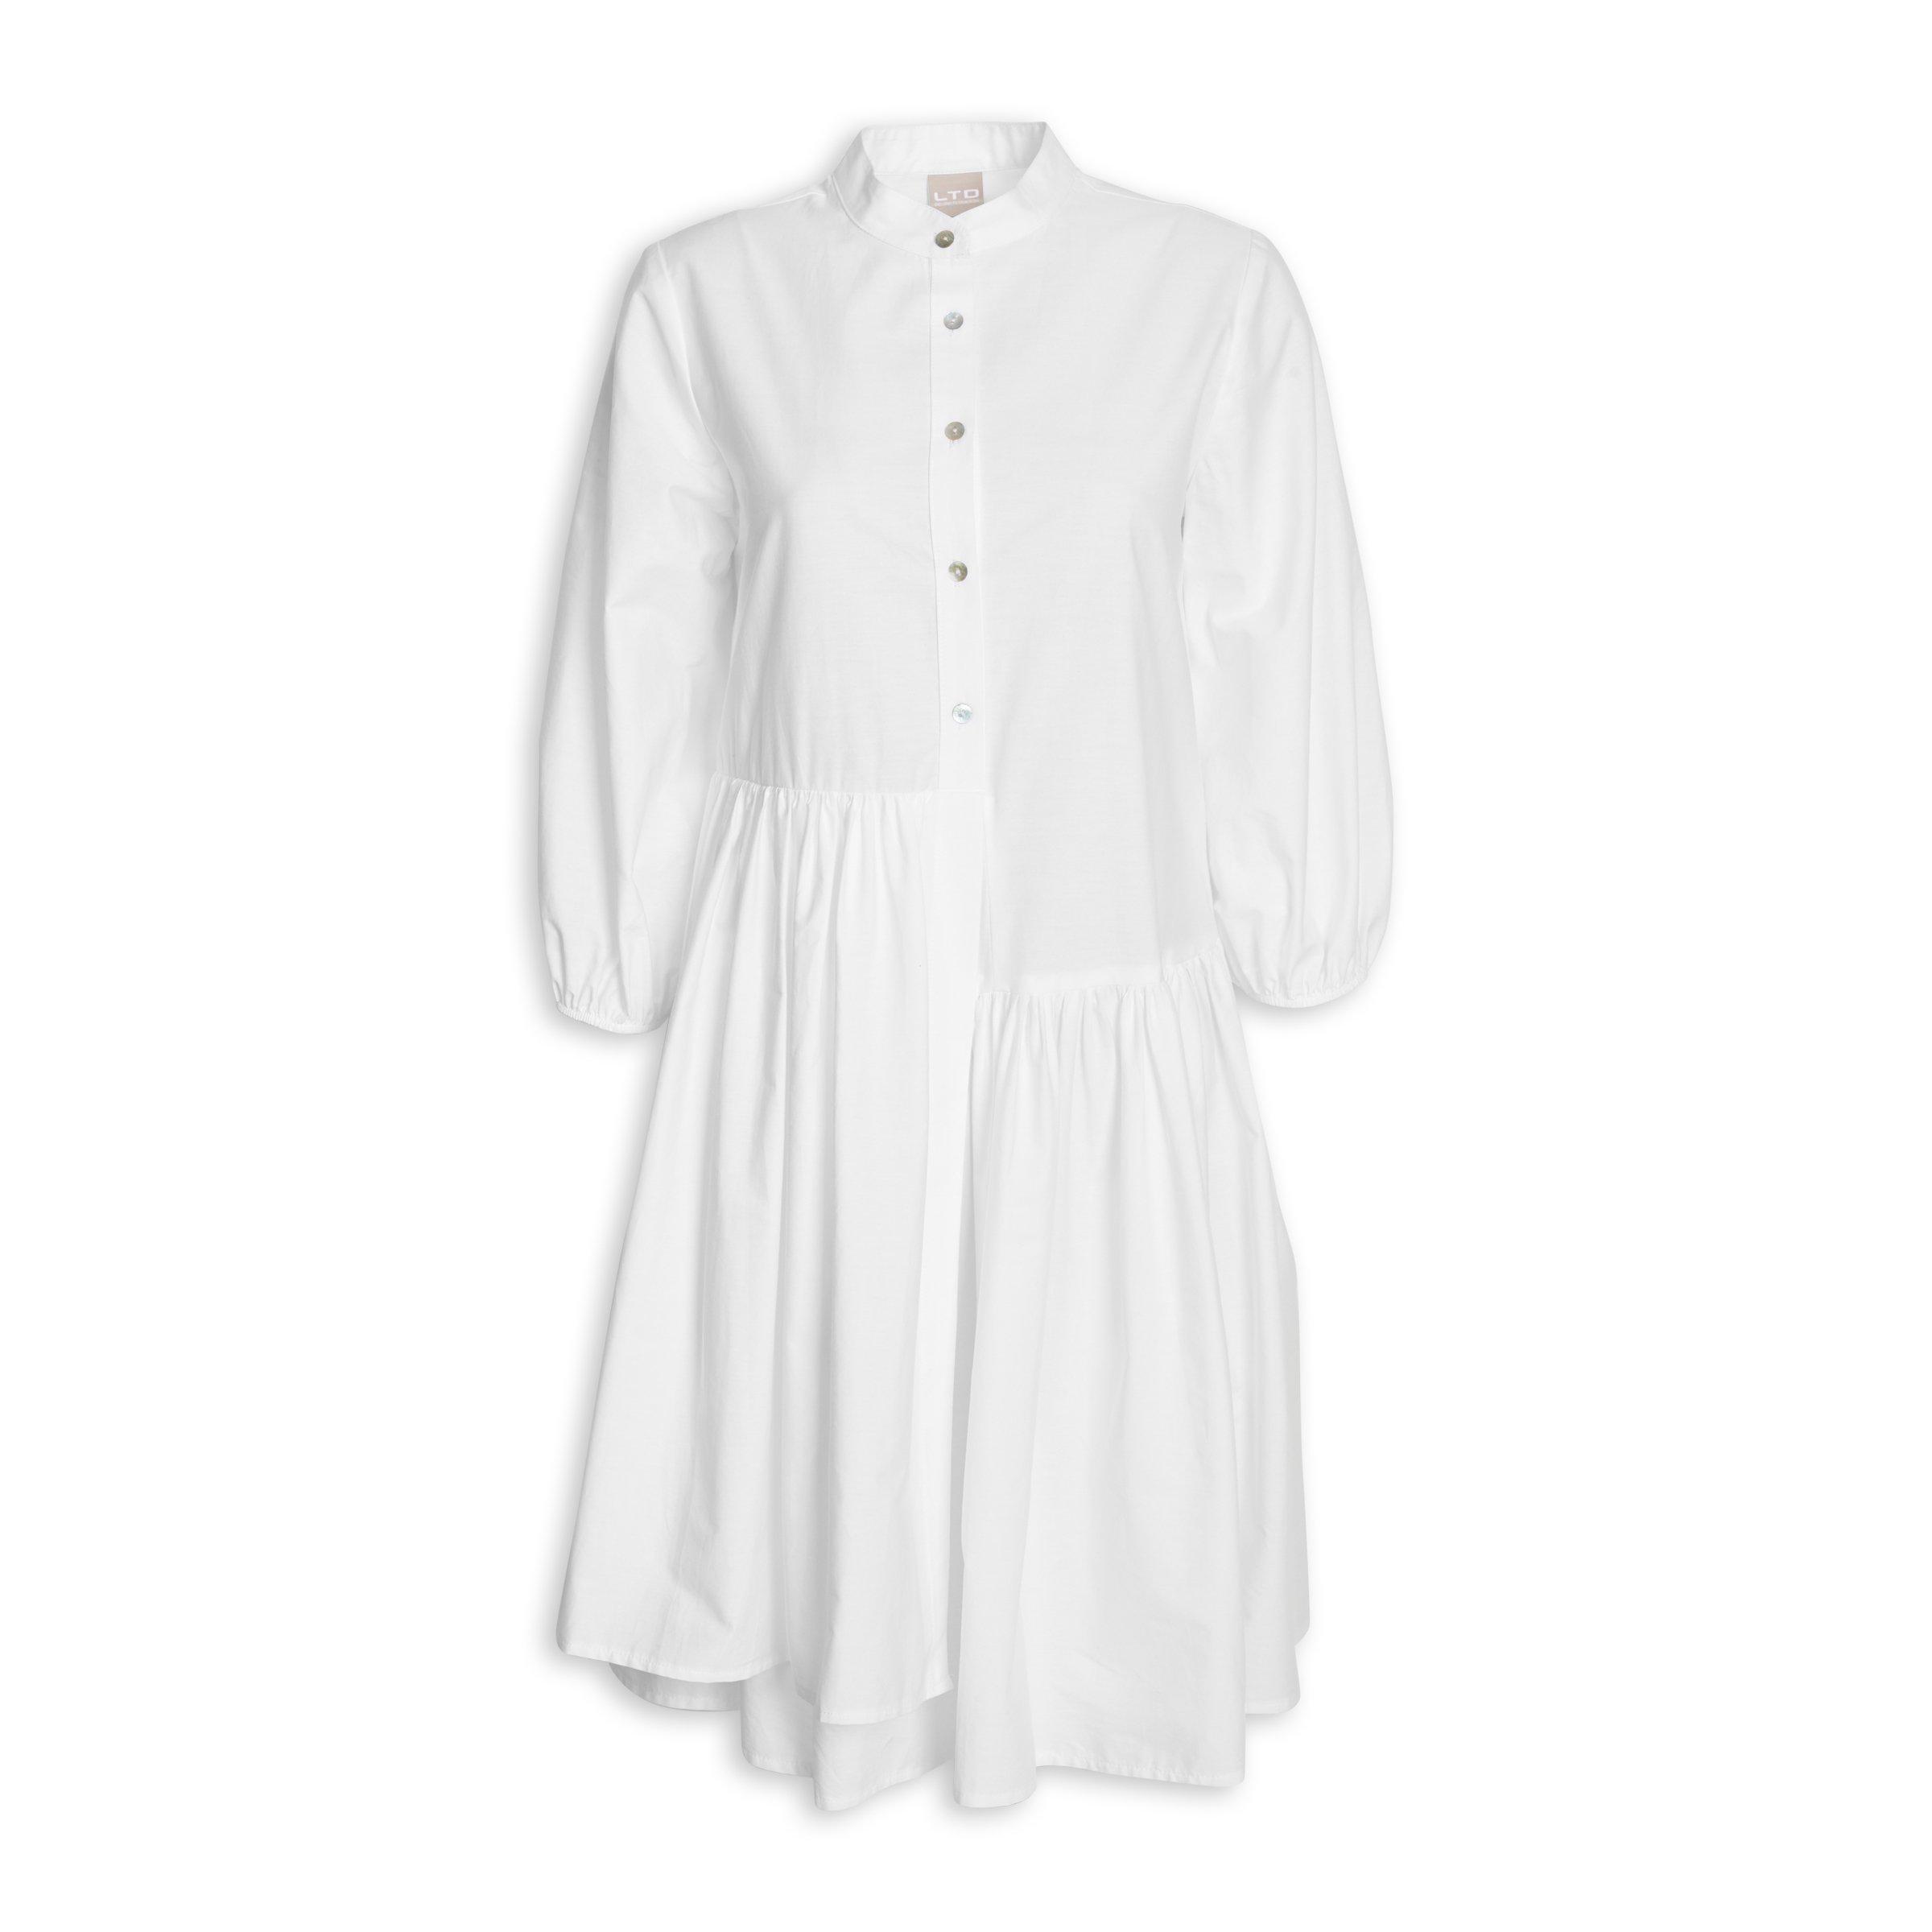 Buy Ltd Woman White Poplin Tiers Dress Online Truworths | Free Hot Nude ...